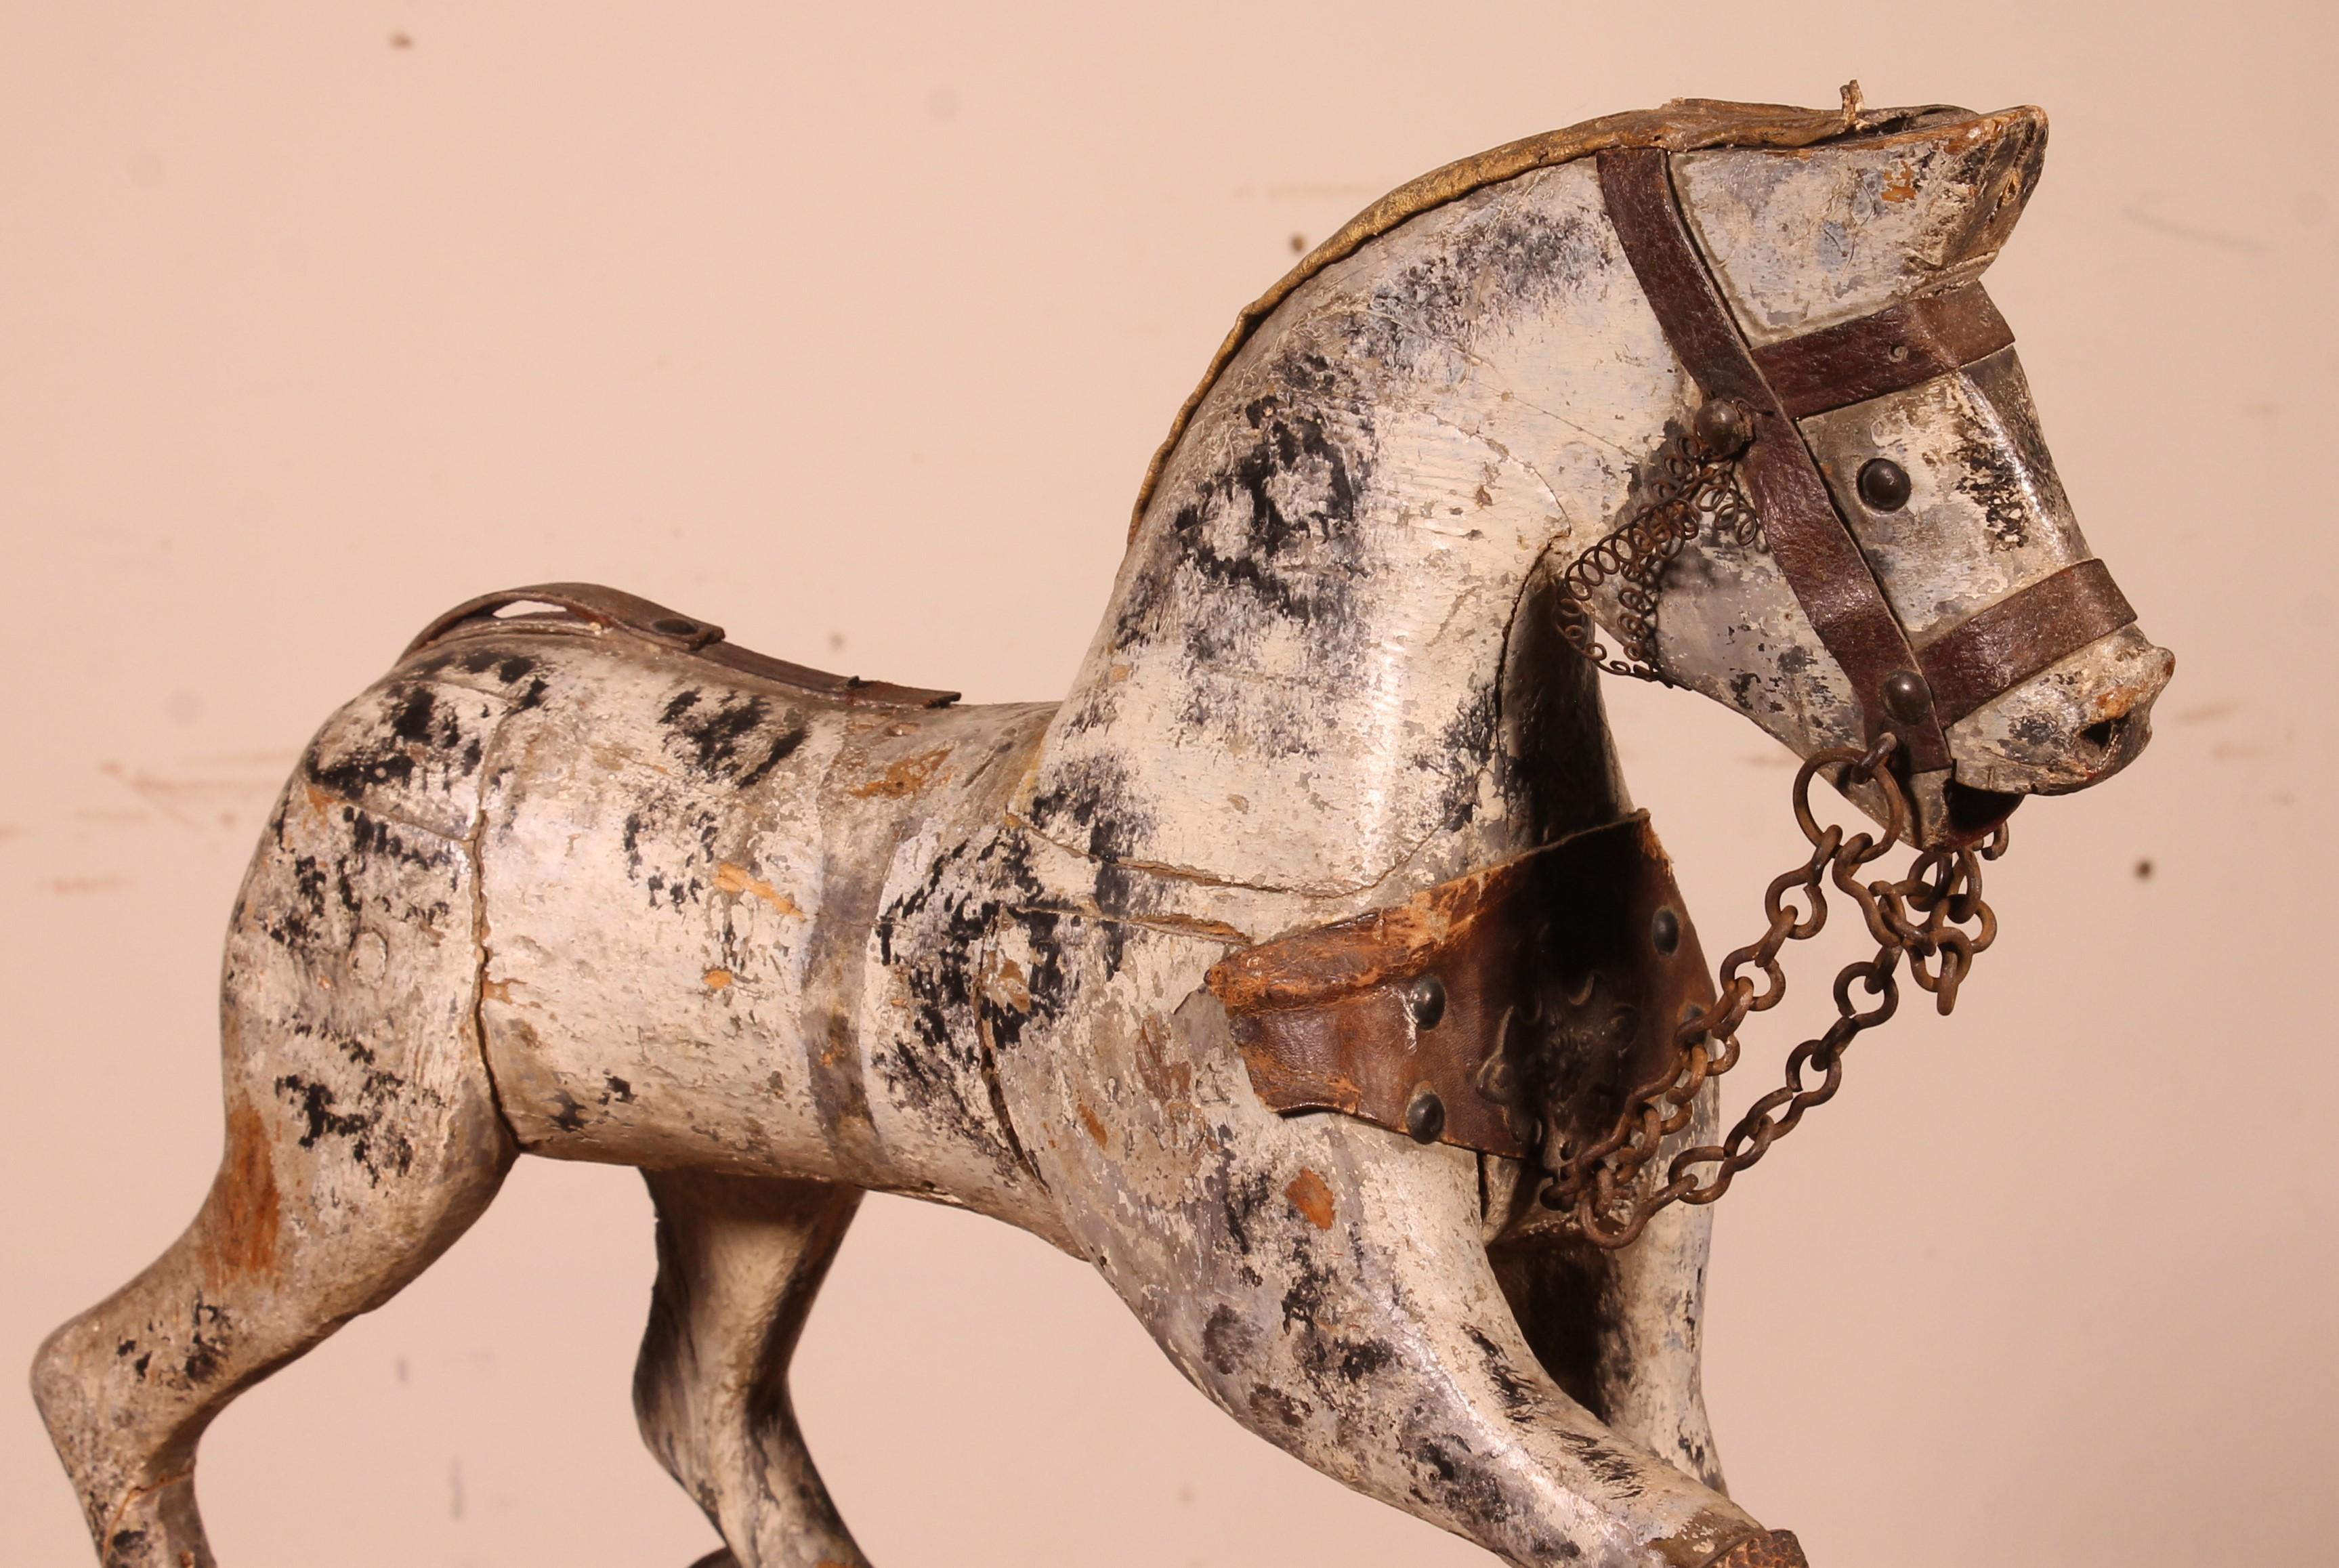 Elegant petit cheval en bois sculpté du 19ème siècle en bois polychrome.

Très belle polychromie qui a beaucoup de charme
Jouet d'enfant ancien avec les roues avant qui se déplacent
En bon état compte tenu de son âge et de son utilisation
Très